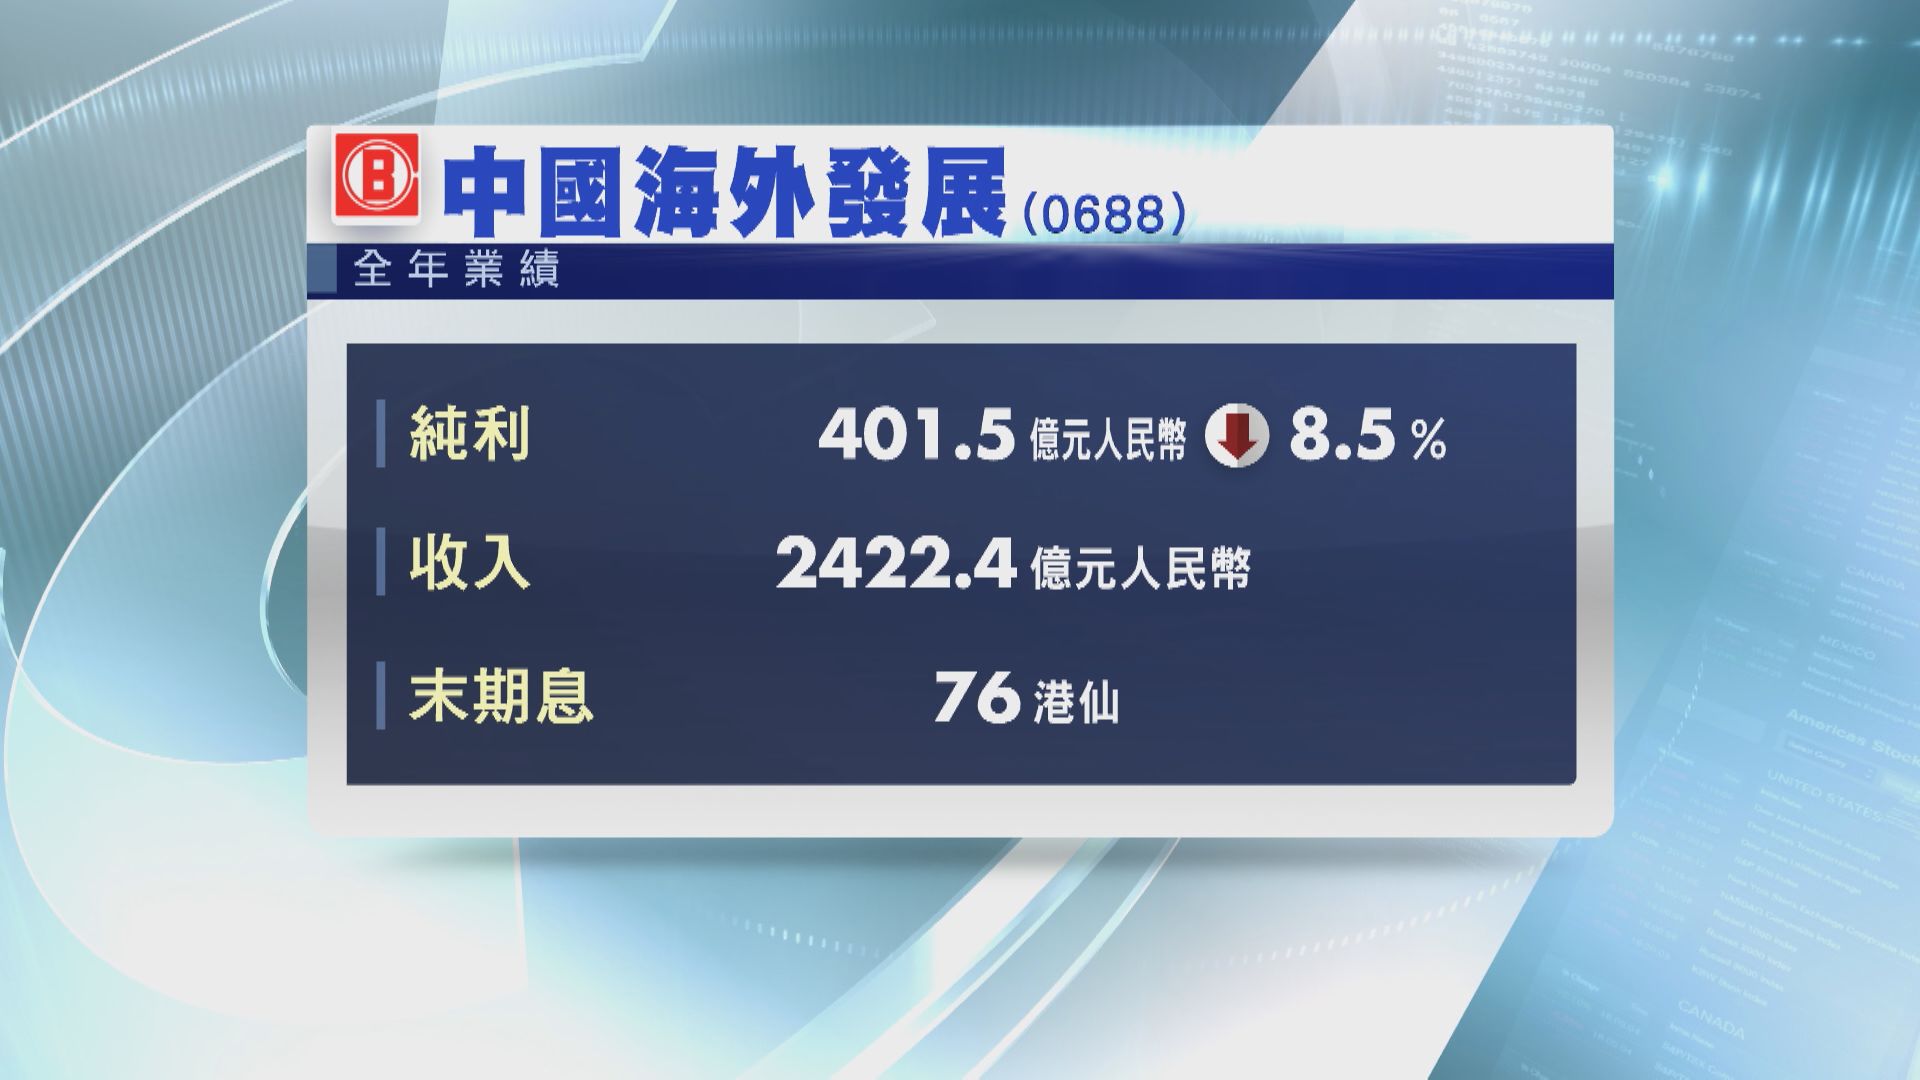 【業績速報】中海外賺401.5億人幣  末期息增4%